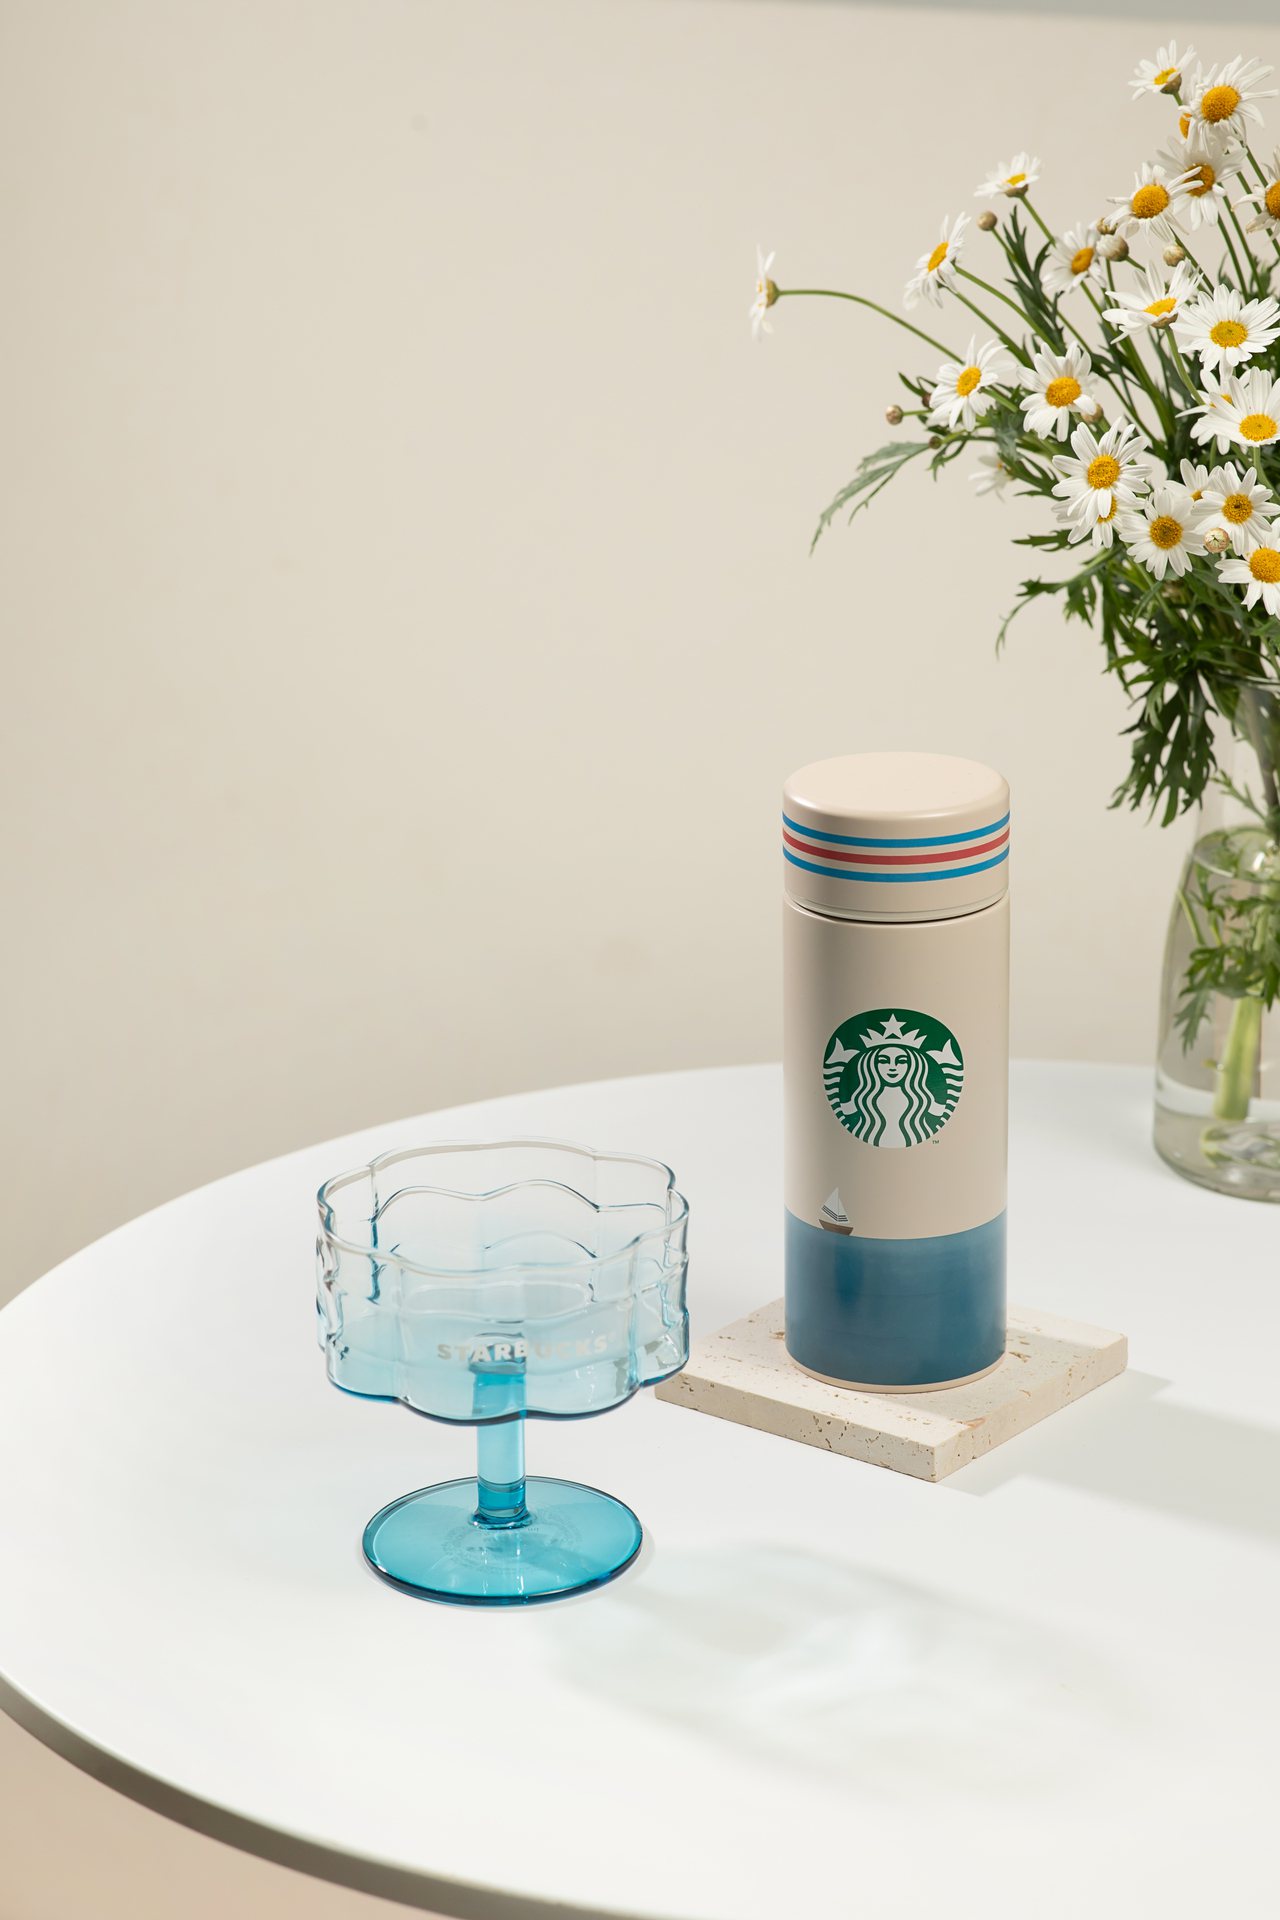 推出繽紛淺藍杯款「波紋造型玻璃點心杯」和「夏日航行不鏽鋼杯」。圖/星巴克